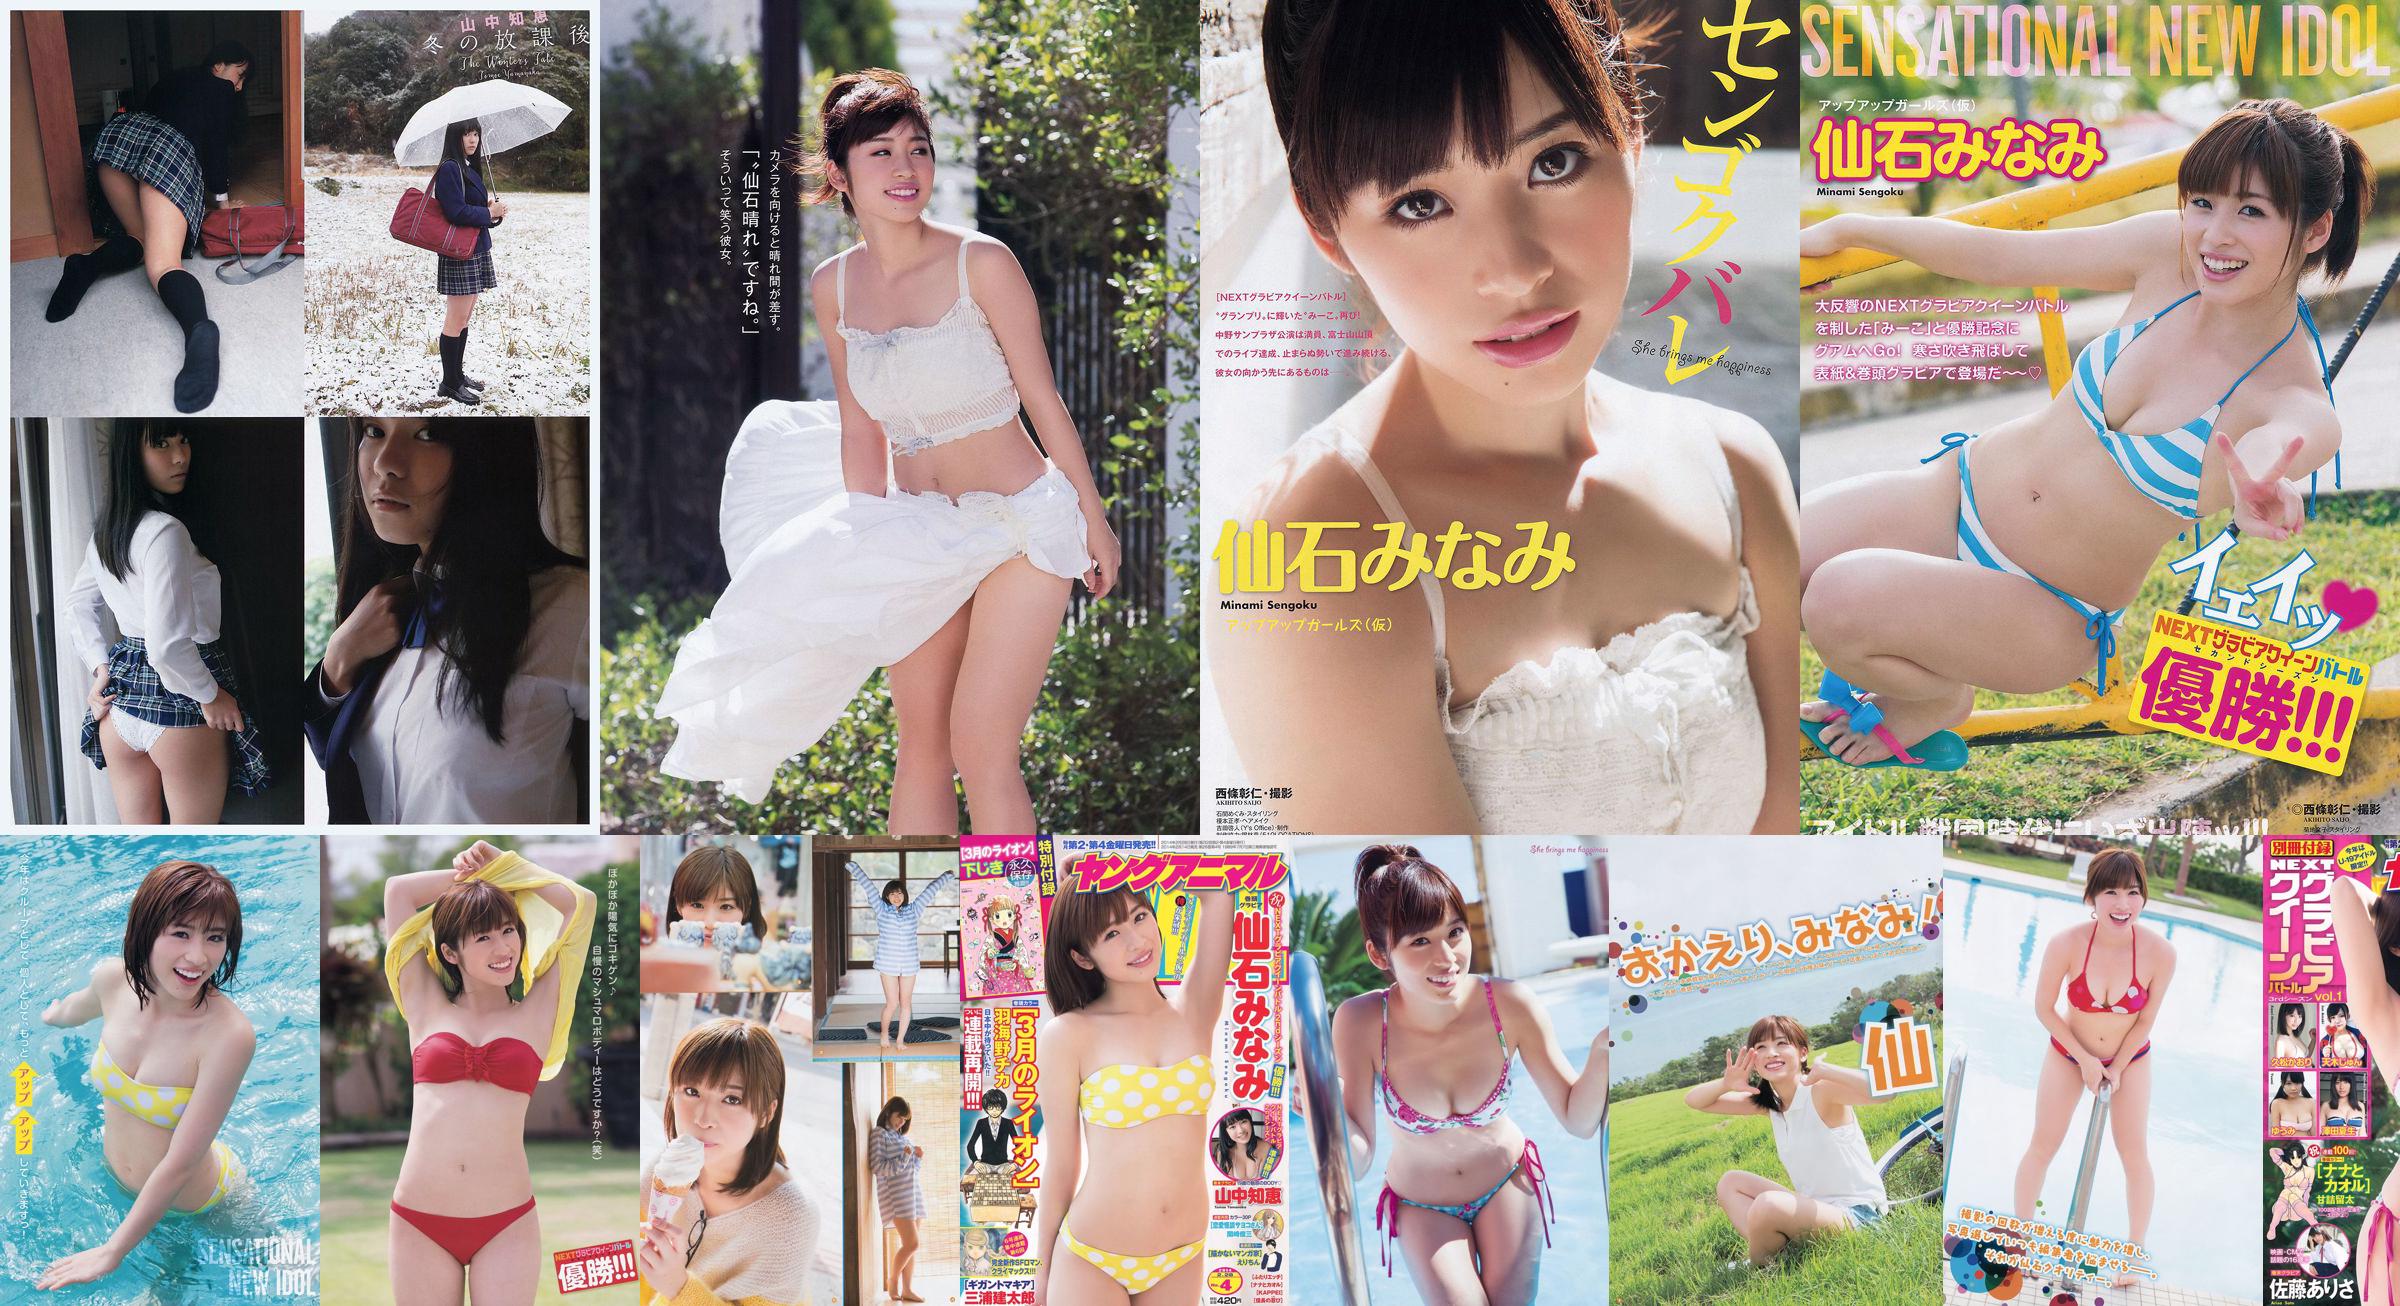 [Young Gangan] Senshi みなみ Yamanaka Tomoji Shiraishi アヤ Kataoka Saya 2014 No.01 Photo Magazine No.1da5f3 Página 1